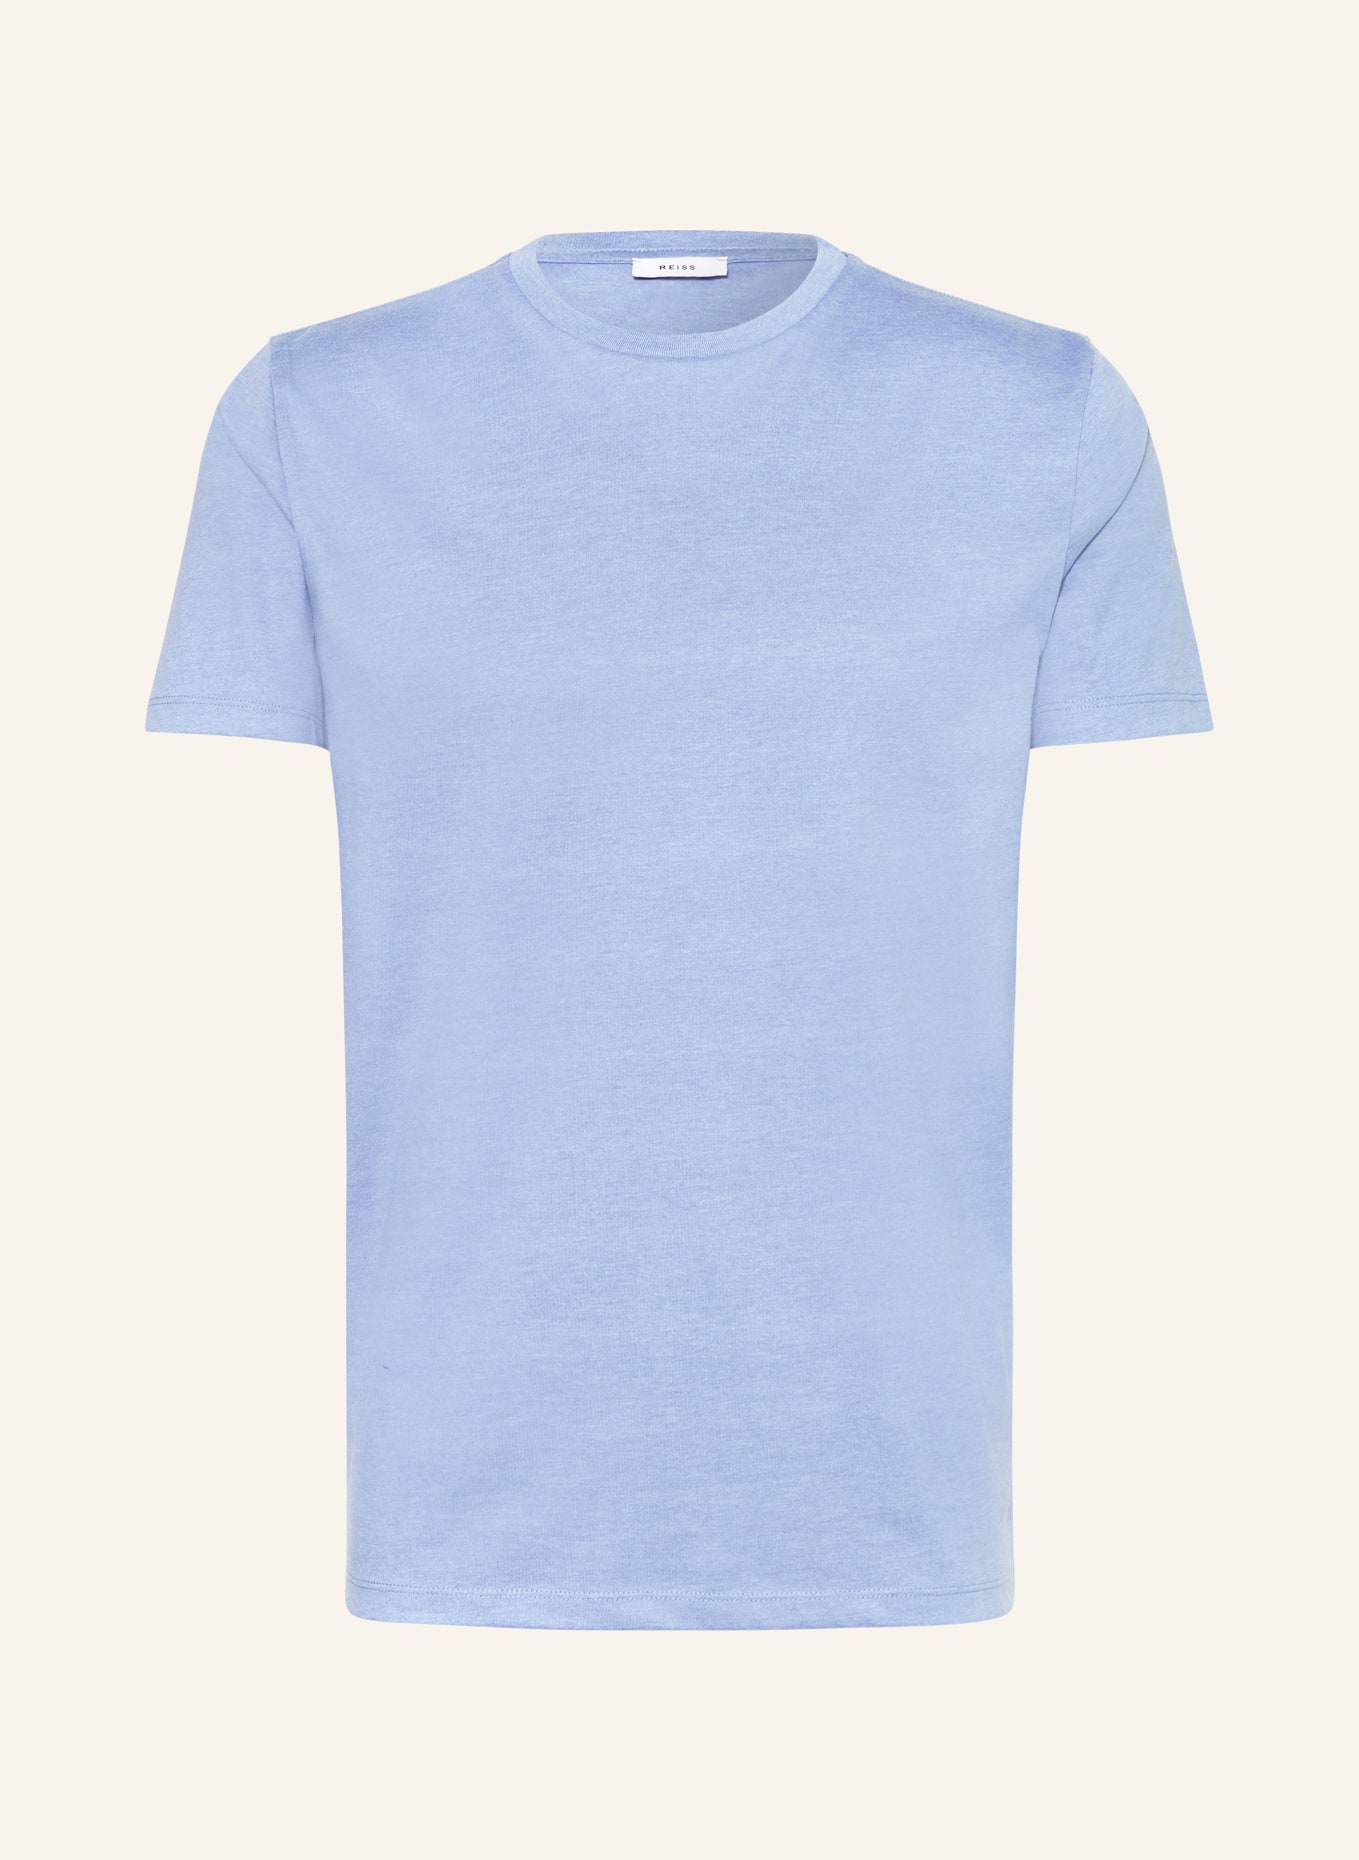 REISS T-shirt BLESS, Color: BLUE (Image 1)